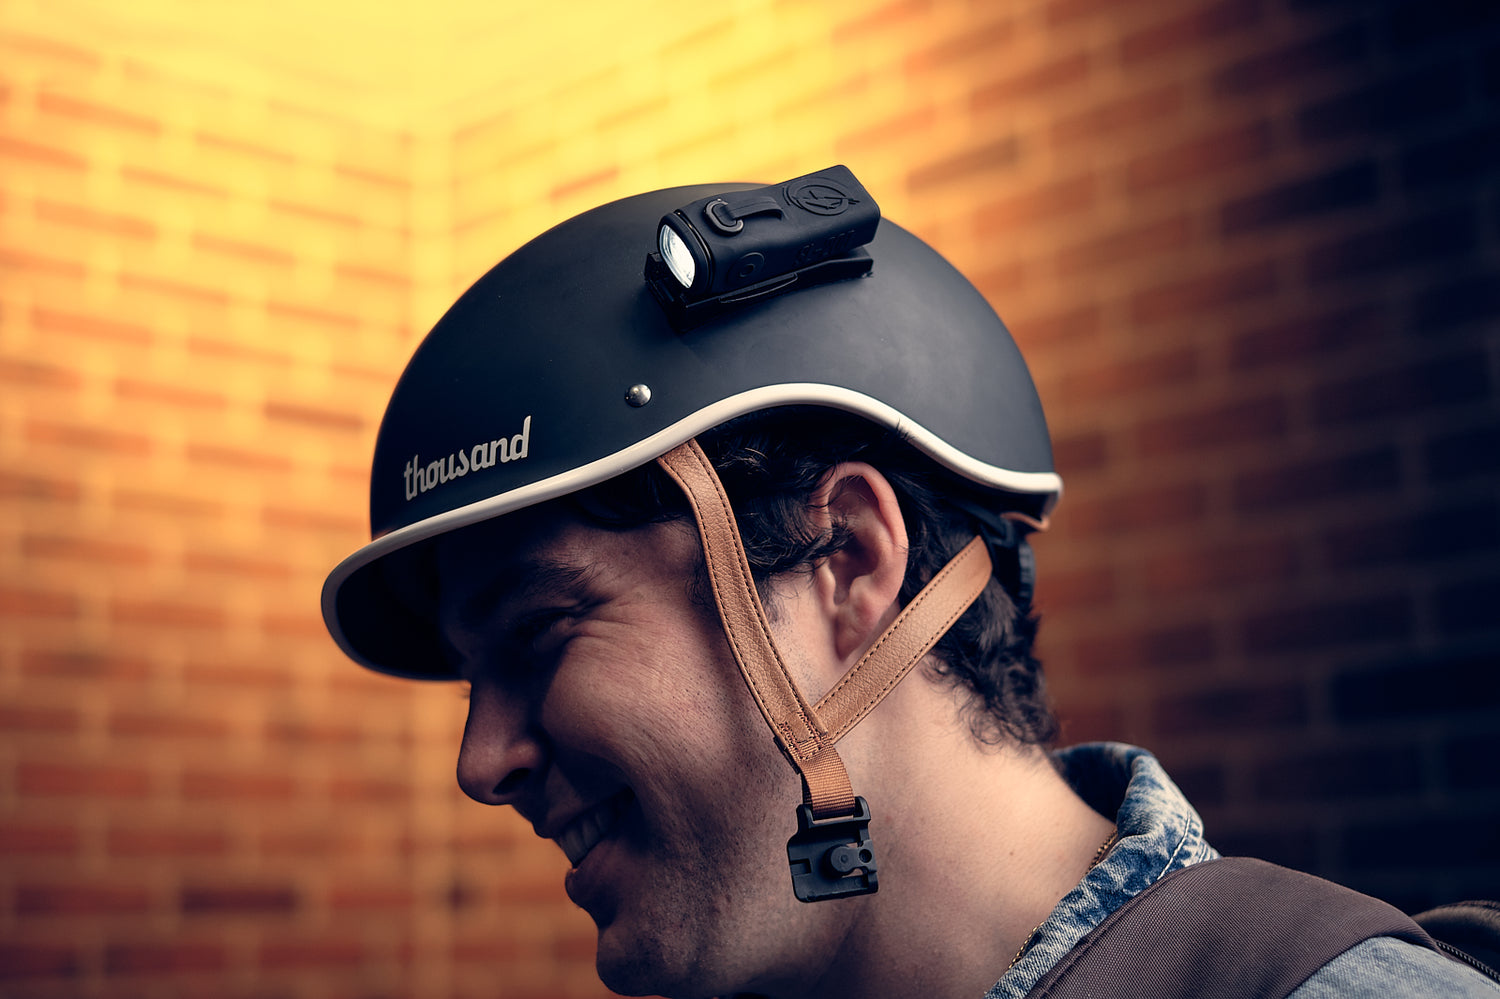 LED Bike Helmet Lights - Easy Mounting - Attach to Helmet